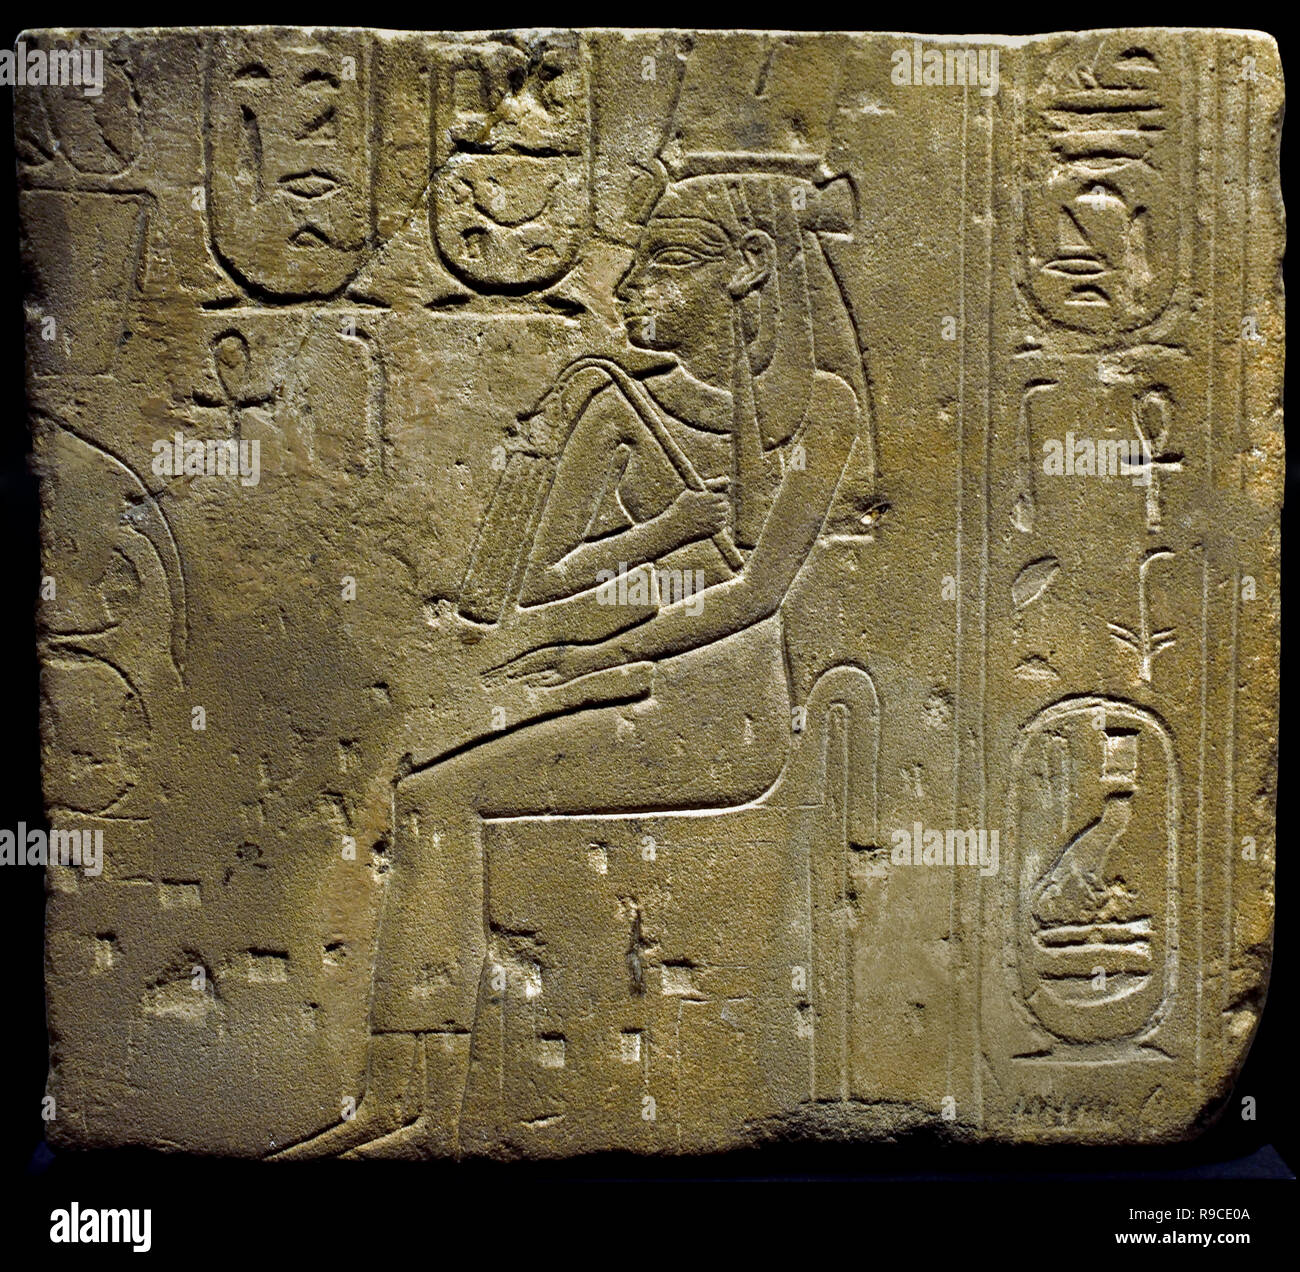 Nitokris (Tochter von Wahibre psammetich I) Entlastung Sandstein Abmessungen: 49,5 x 45 cm 26 Dynastie Ägypten, Ägyptische. (Wahibre Psammetich I., von den Griechen als Psammeticus oder Psammetichus (664 - 610 v. Chr. bekannt, war der erste von drei Könige dieser Name der Link, oder 25 sechsten Dynastie in Ägypten), Stockfoto